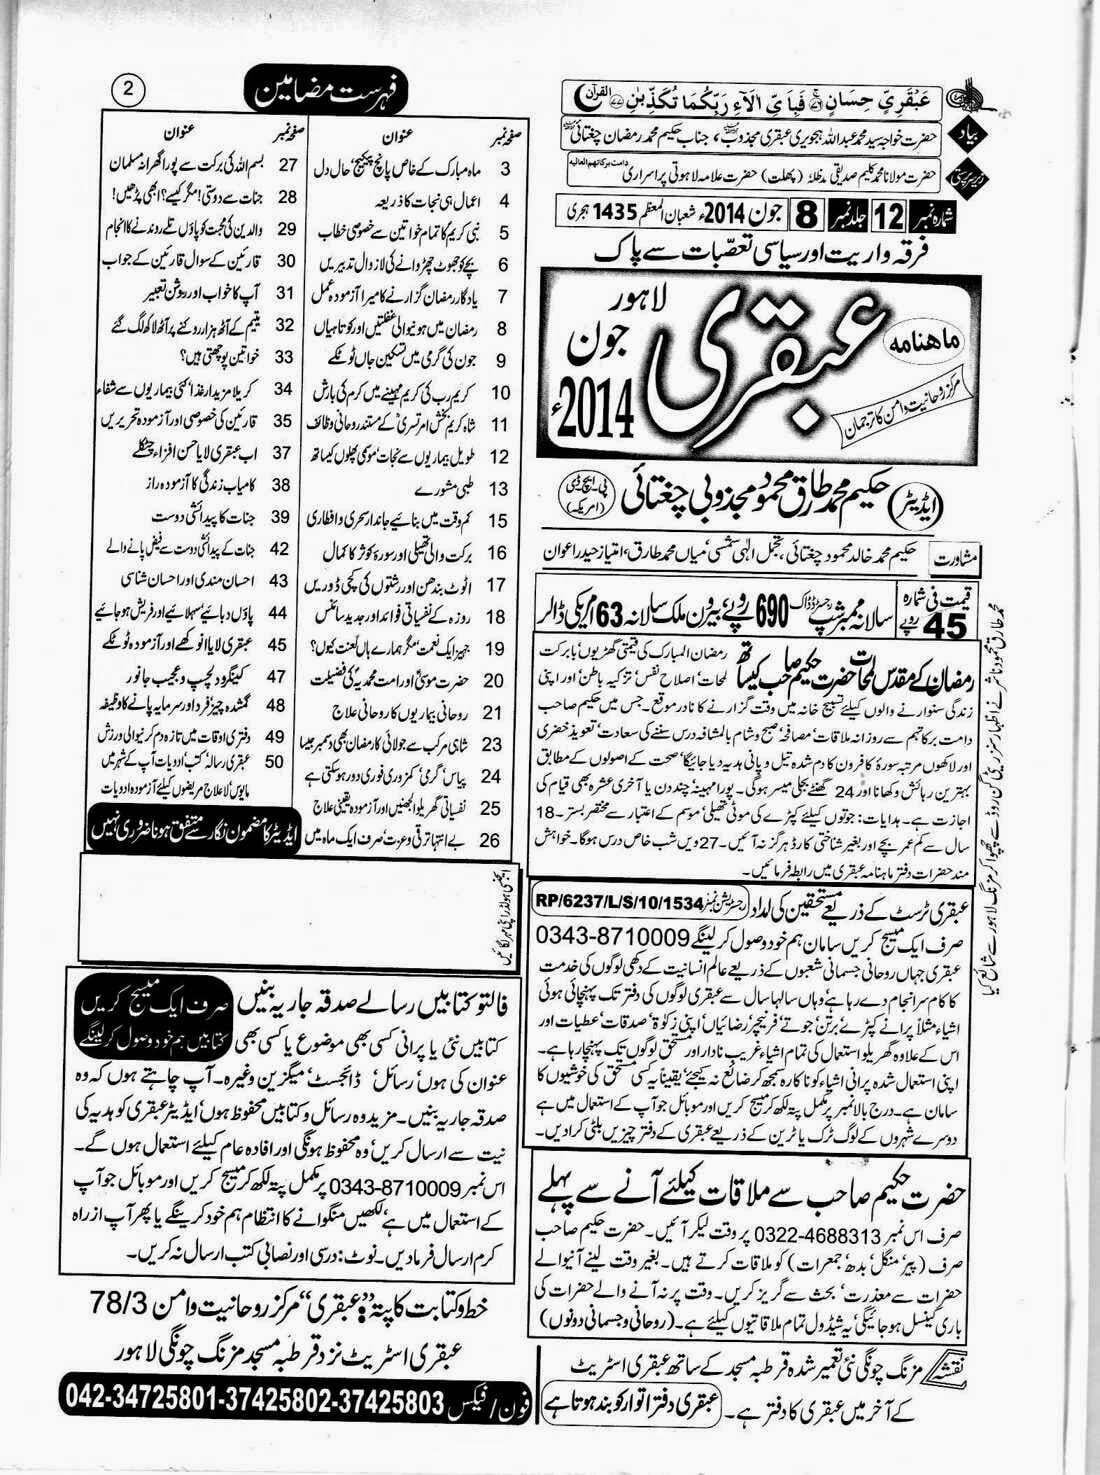 ubqari june 2014 page 2